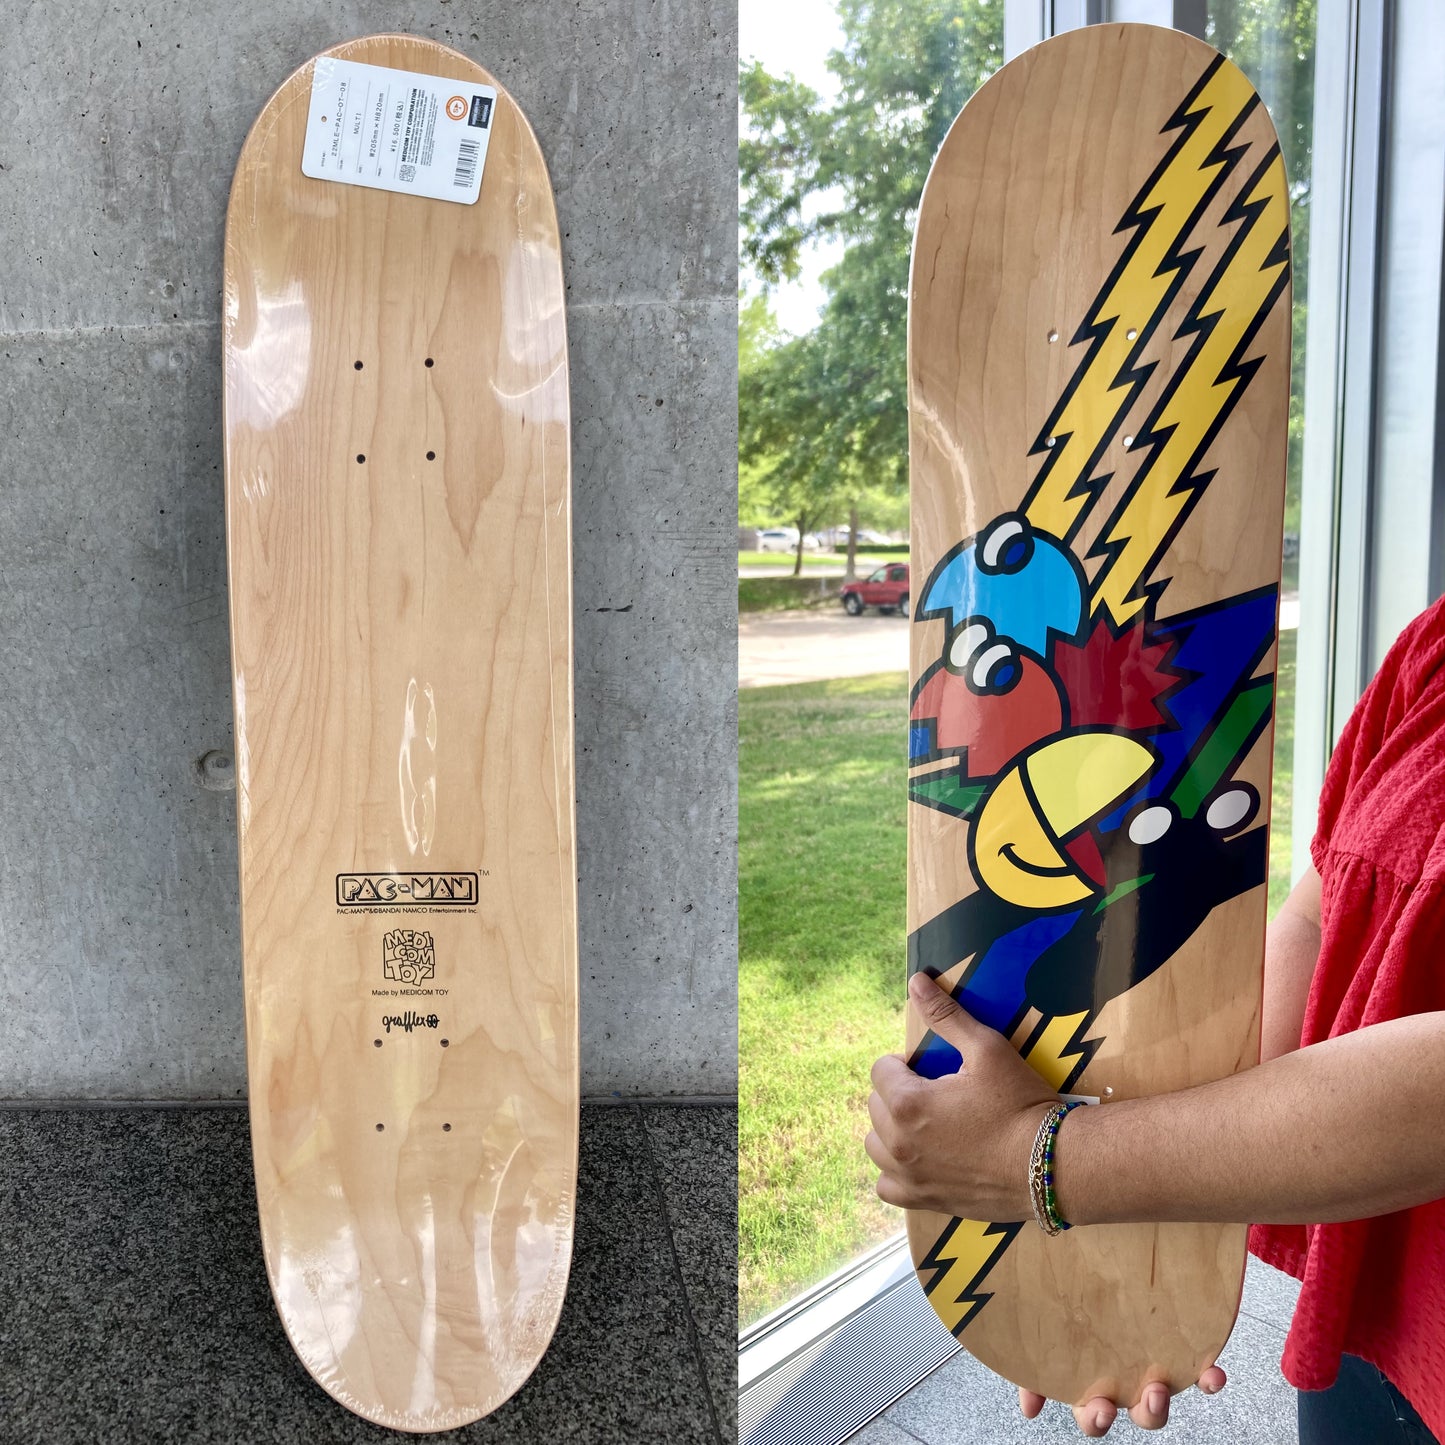 PAC-MAN X GRAFFLEX 01 Skateboard Deck by Medicom Toy